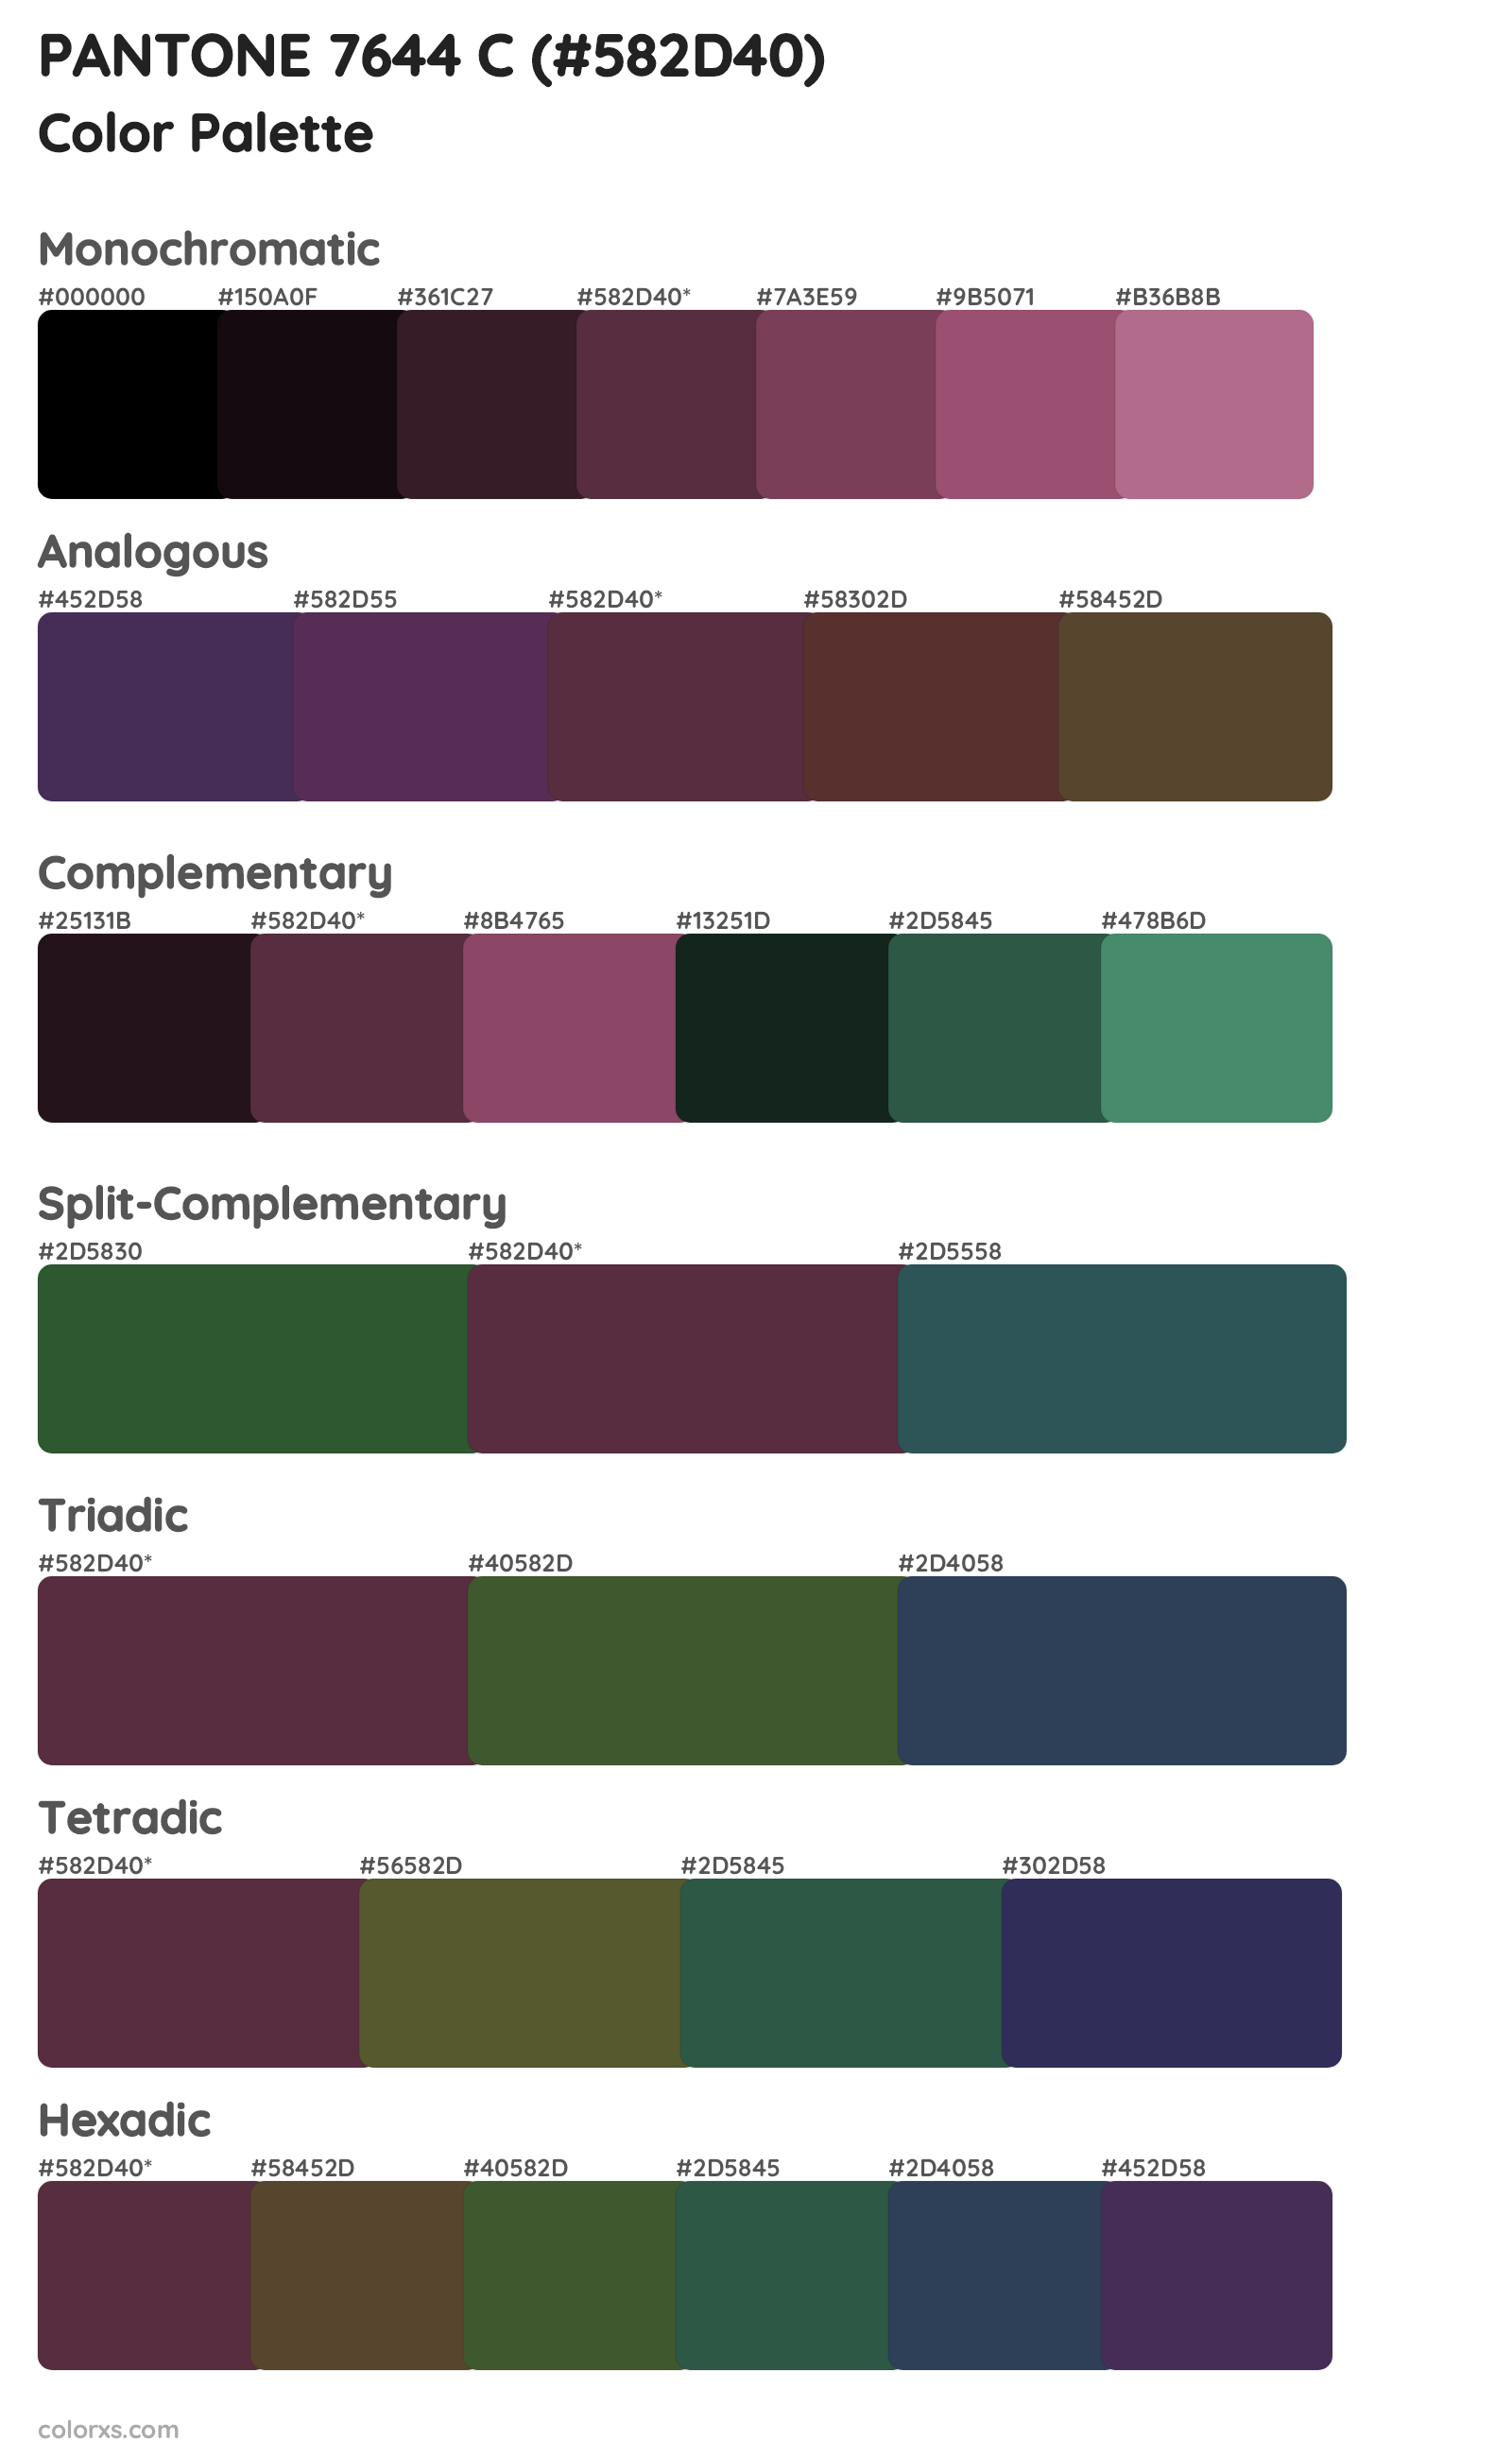 PANTONE 7644 C Color Scheme Palettes